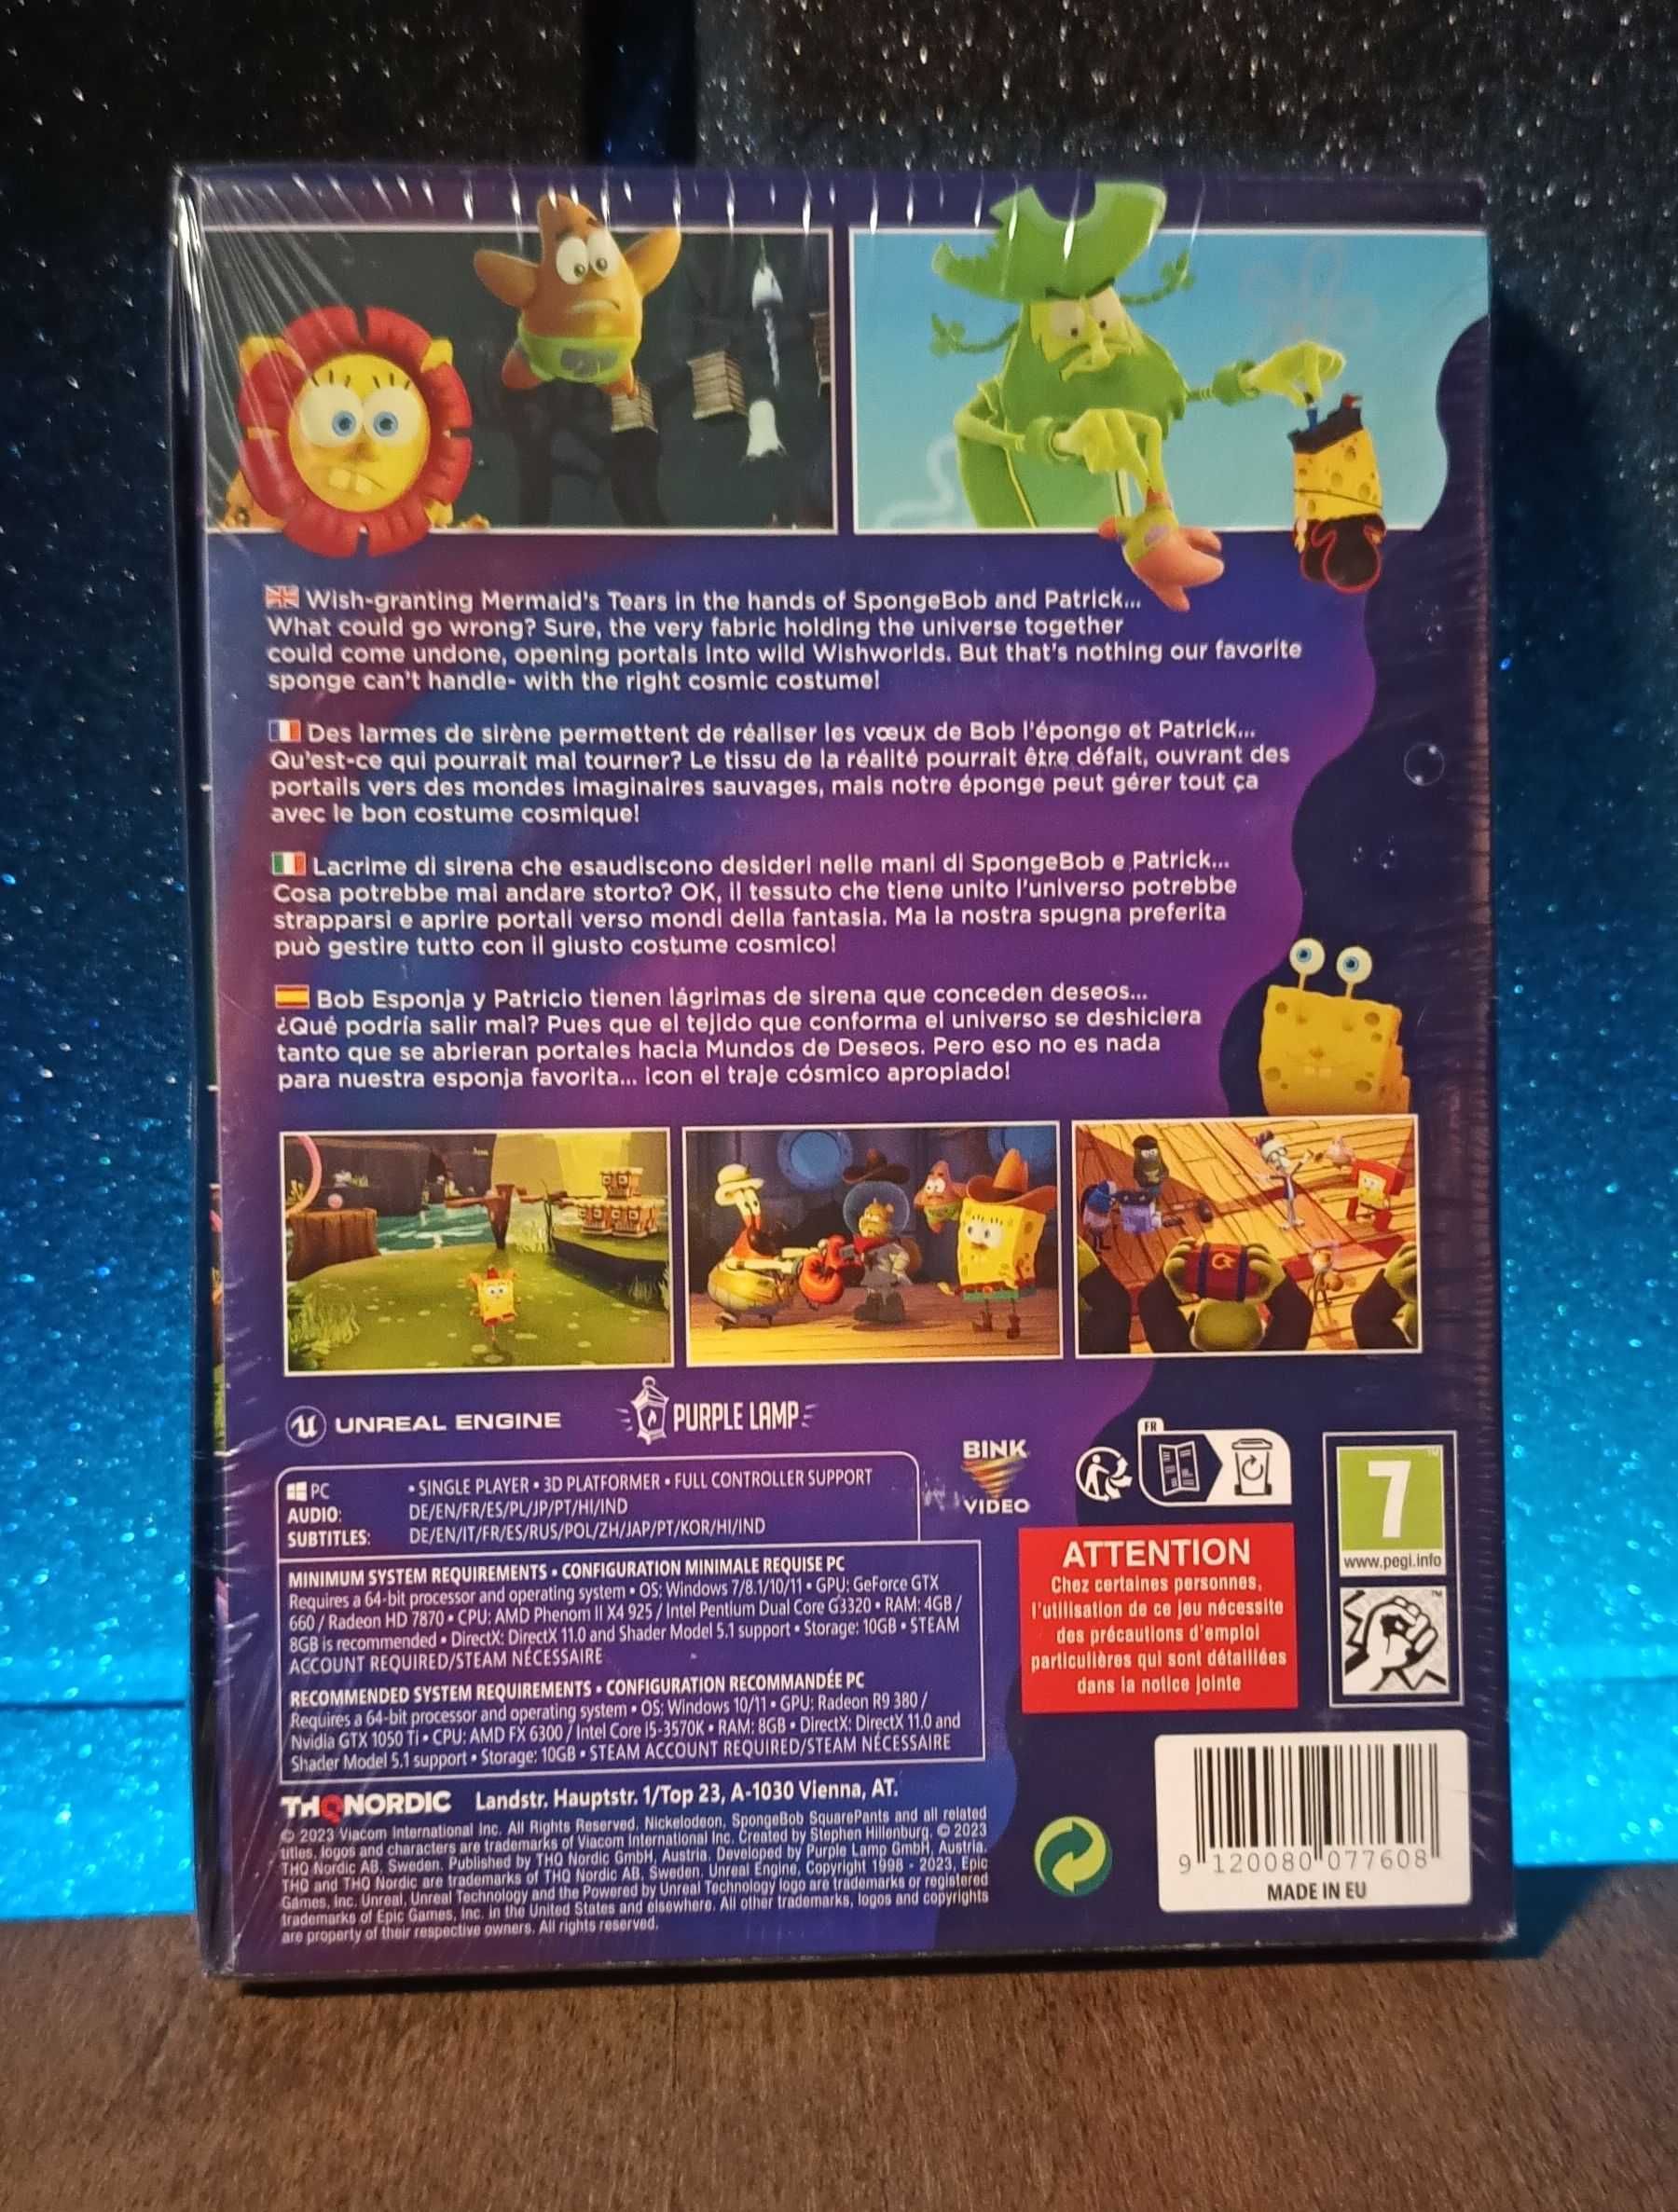 Spongebob Squarepants: Cosmic Shake PC - świetna gra dla dzieci PL DUB